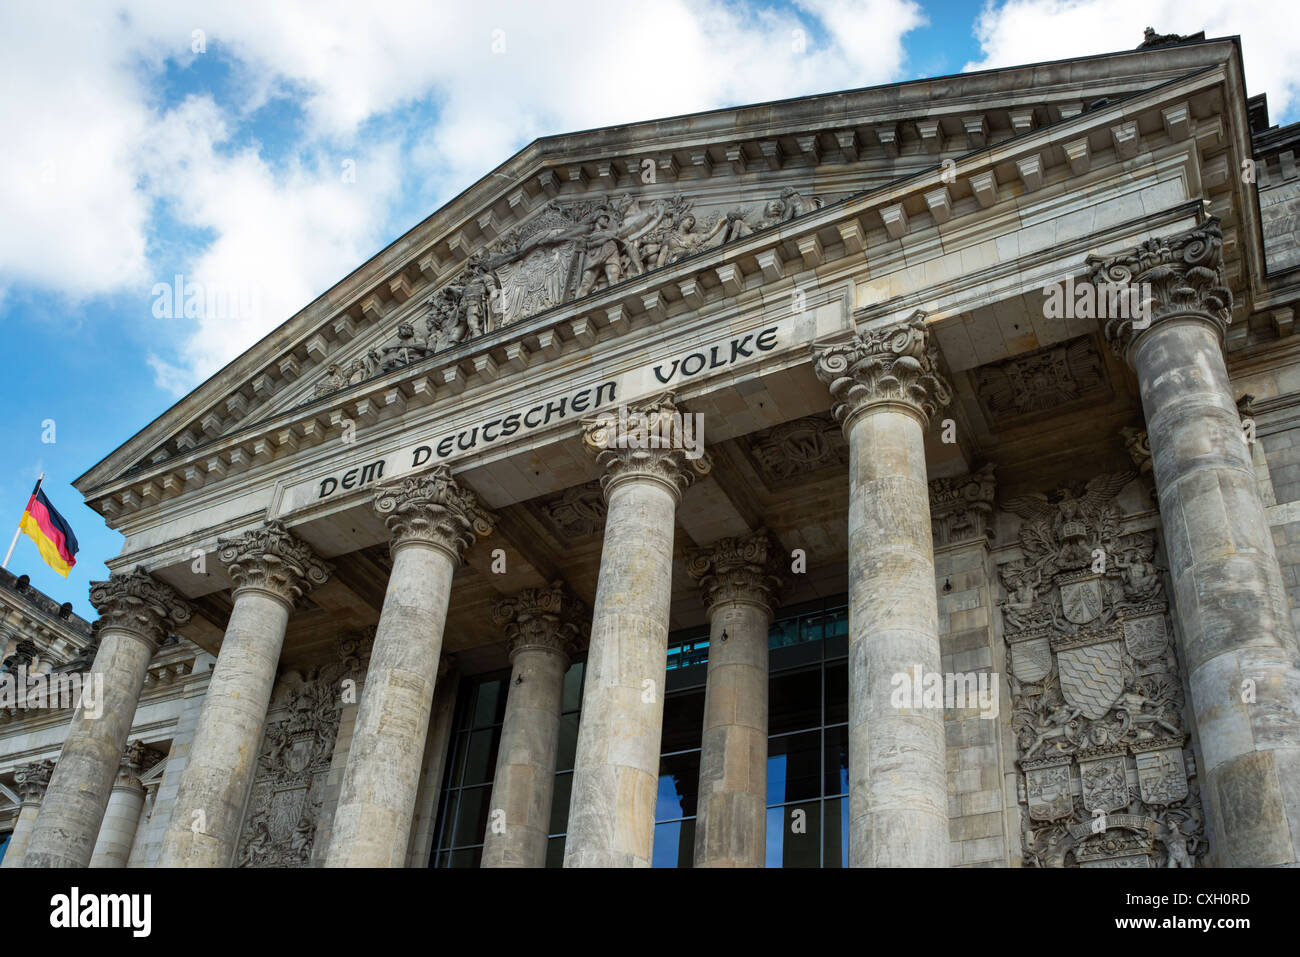 Détail du bâtiment du Reichstag, siège du parlement allemand, Berlin, Germany, Europe Banque D'Images